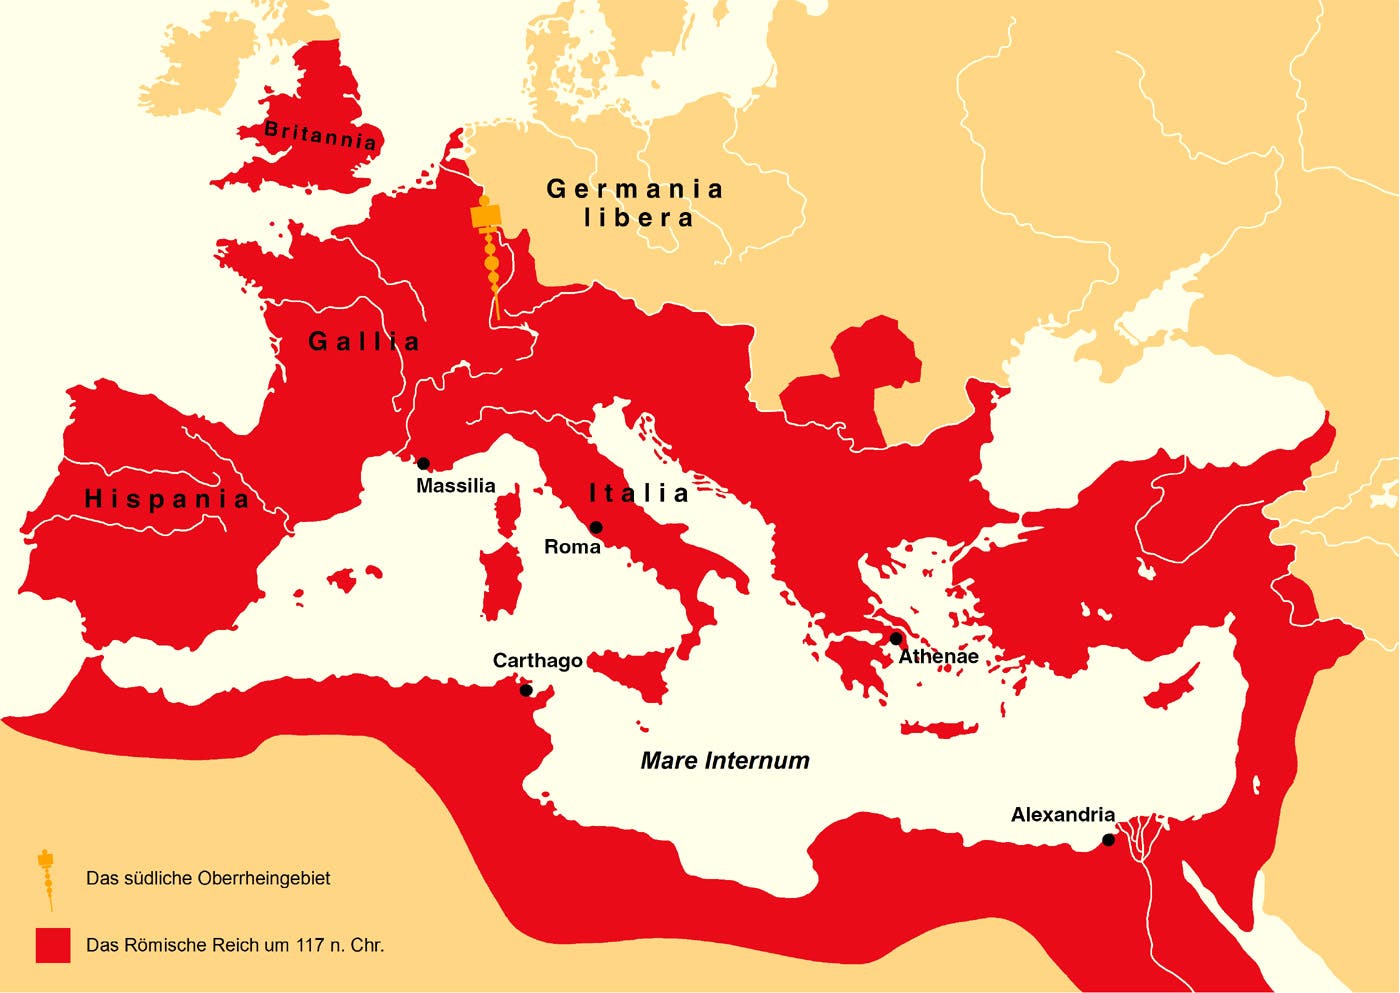 خريطة الإمبراطورية الرومانية خلال أوج توسعها